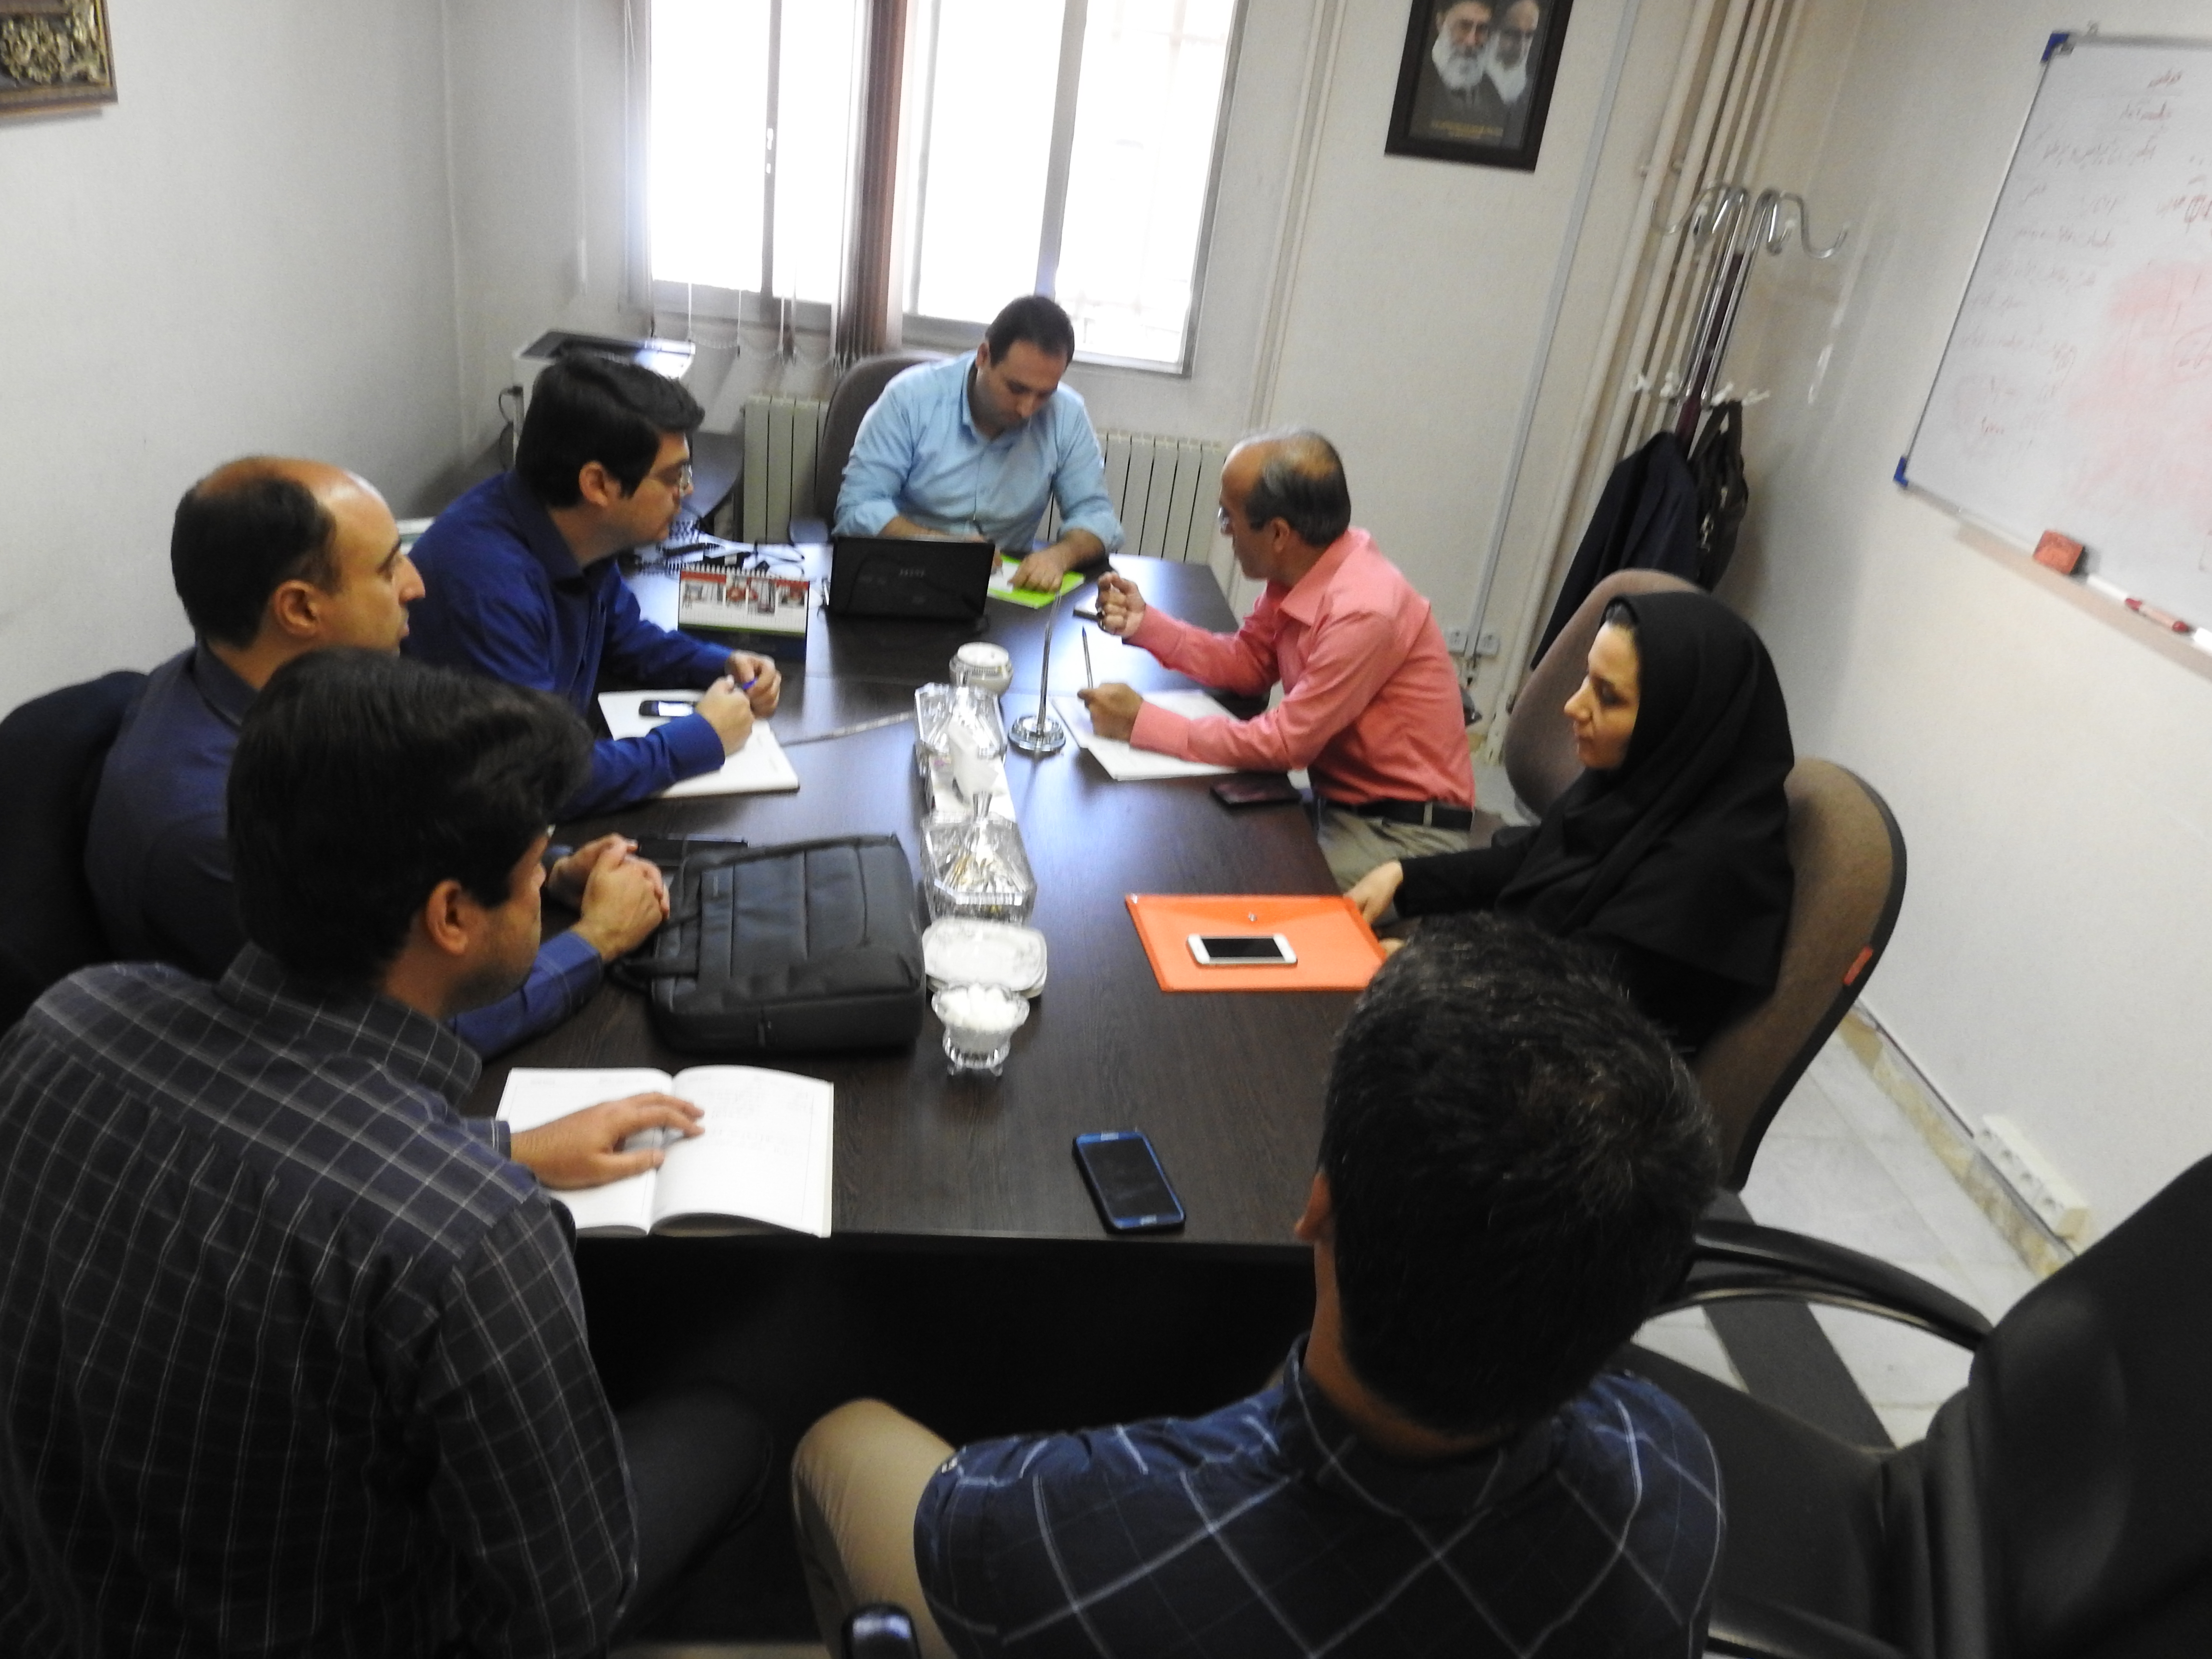 جلسه نظام ارجاع با حضور کارشناسان فناوری اطلاعات برگزار شد